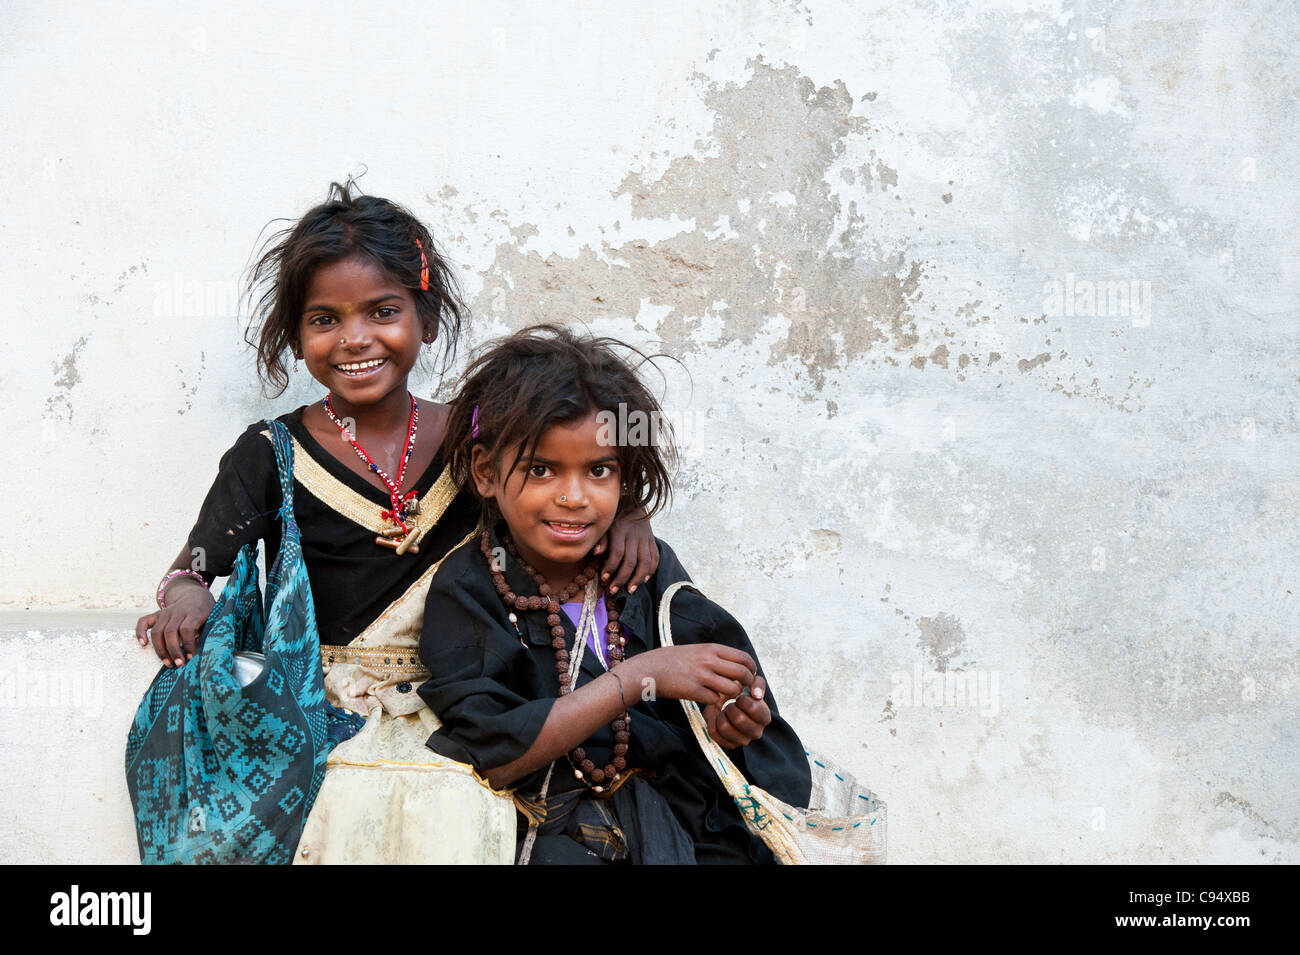 Les Indiens pauvres filles mendiant nomades contre un mur Banque D'Images